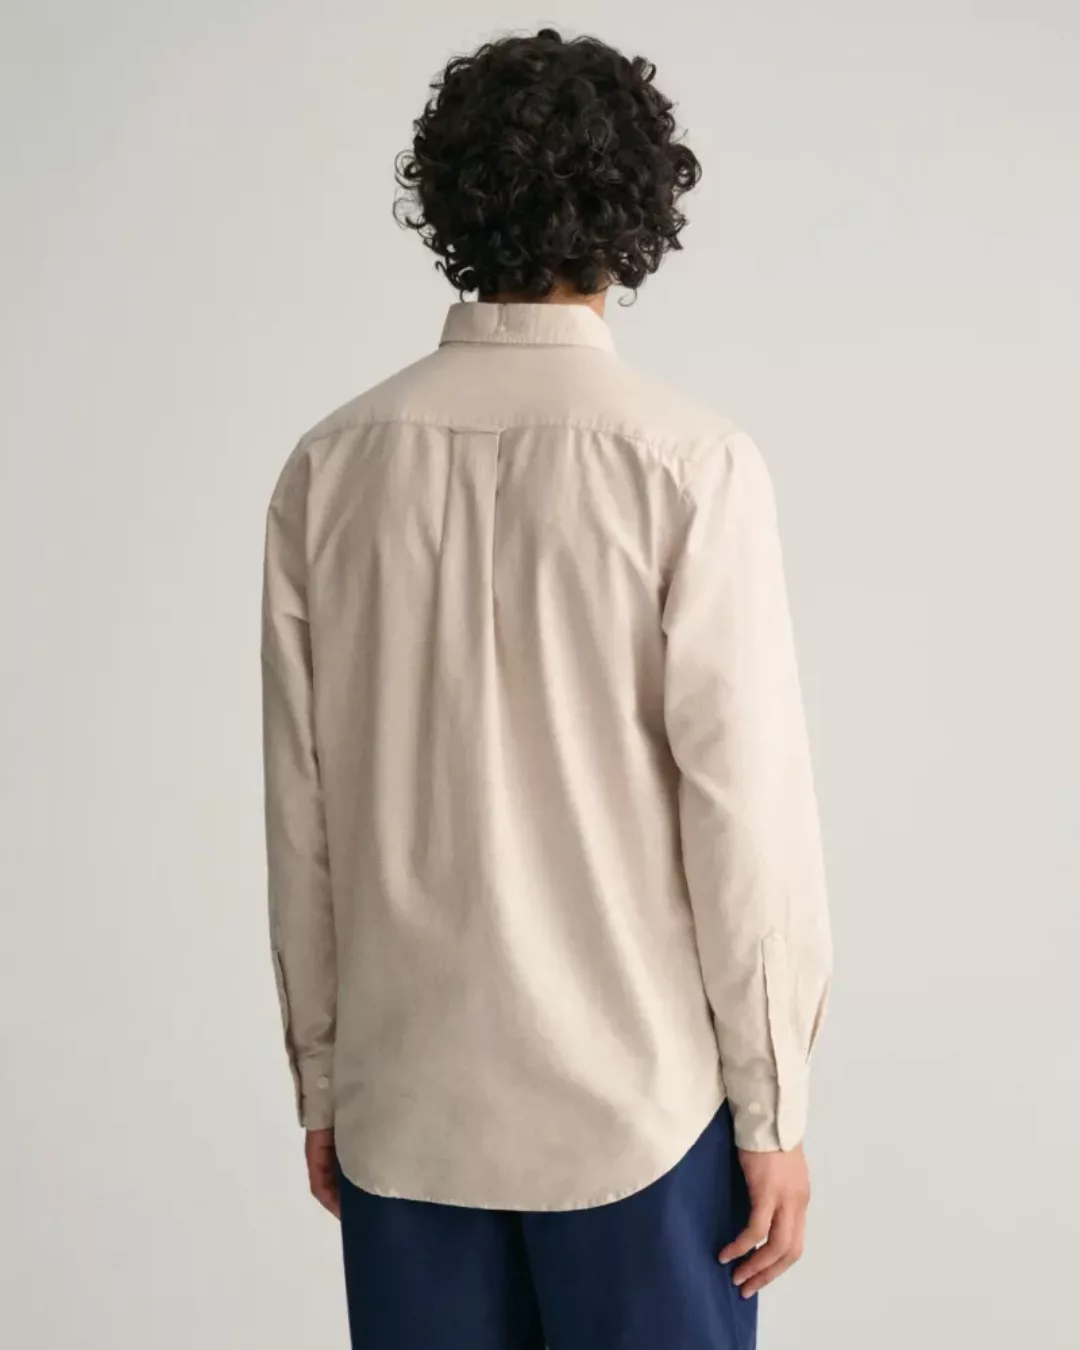 Gant Casual Hemd Oxford Beige - Größe L günstig online kaufen